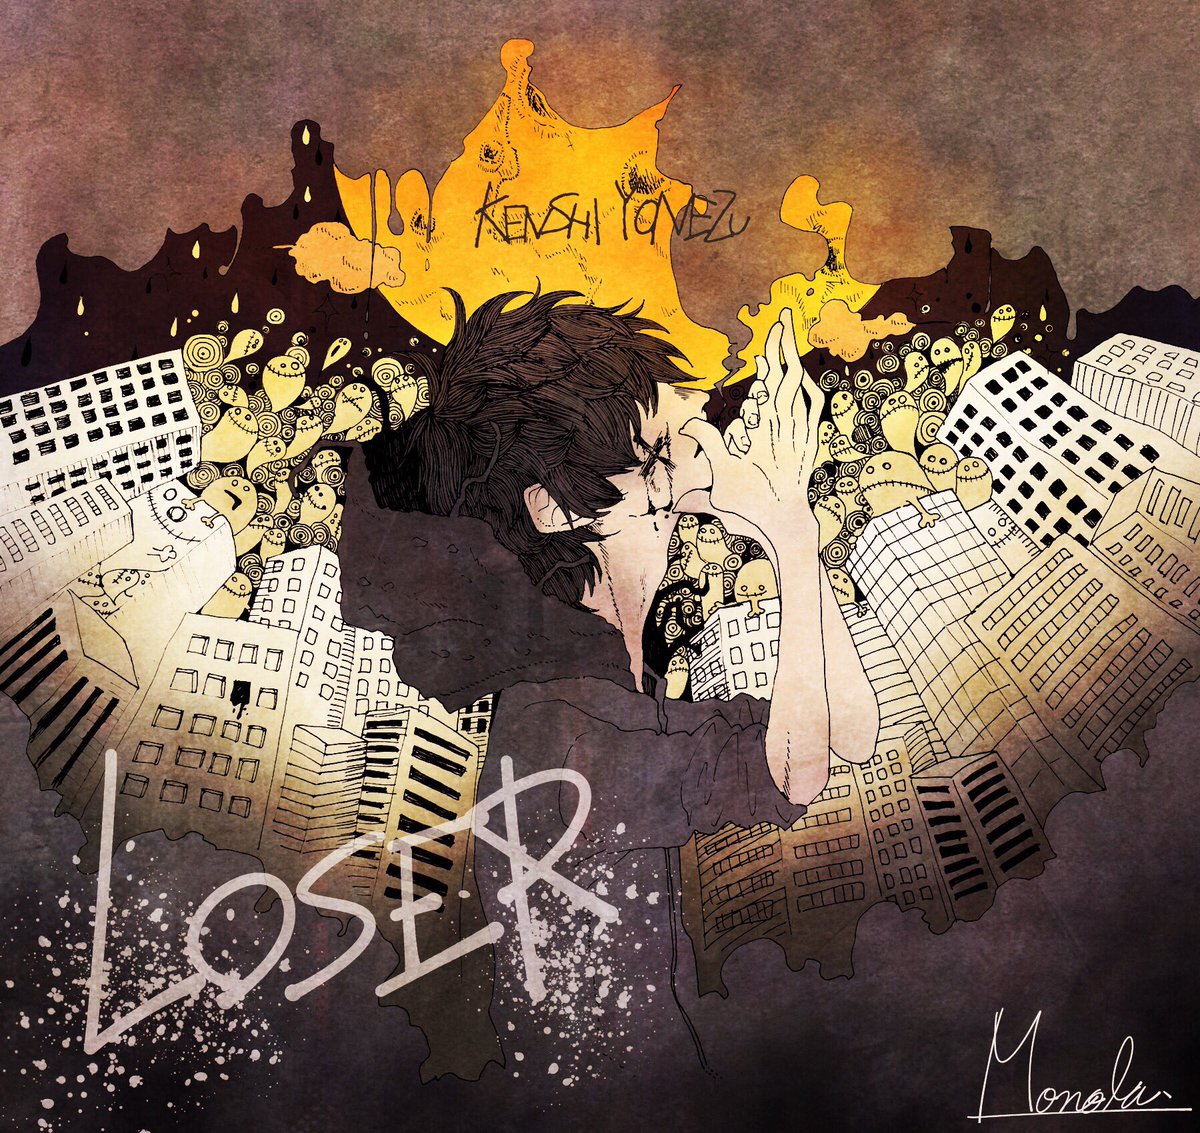 LOSER 3周年おめでとうございます👻
この曲で救われた沢山の人の中の1人です。
大好きです☺️
てことで過去絵 